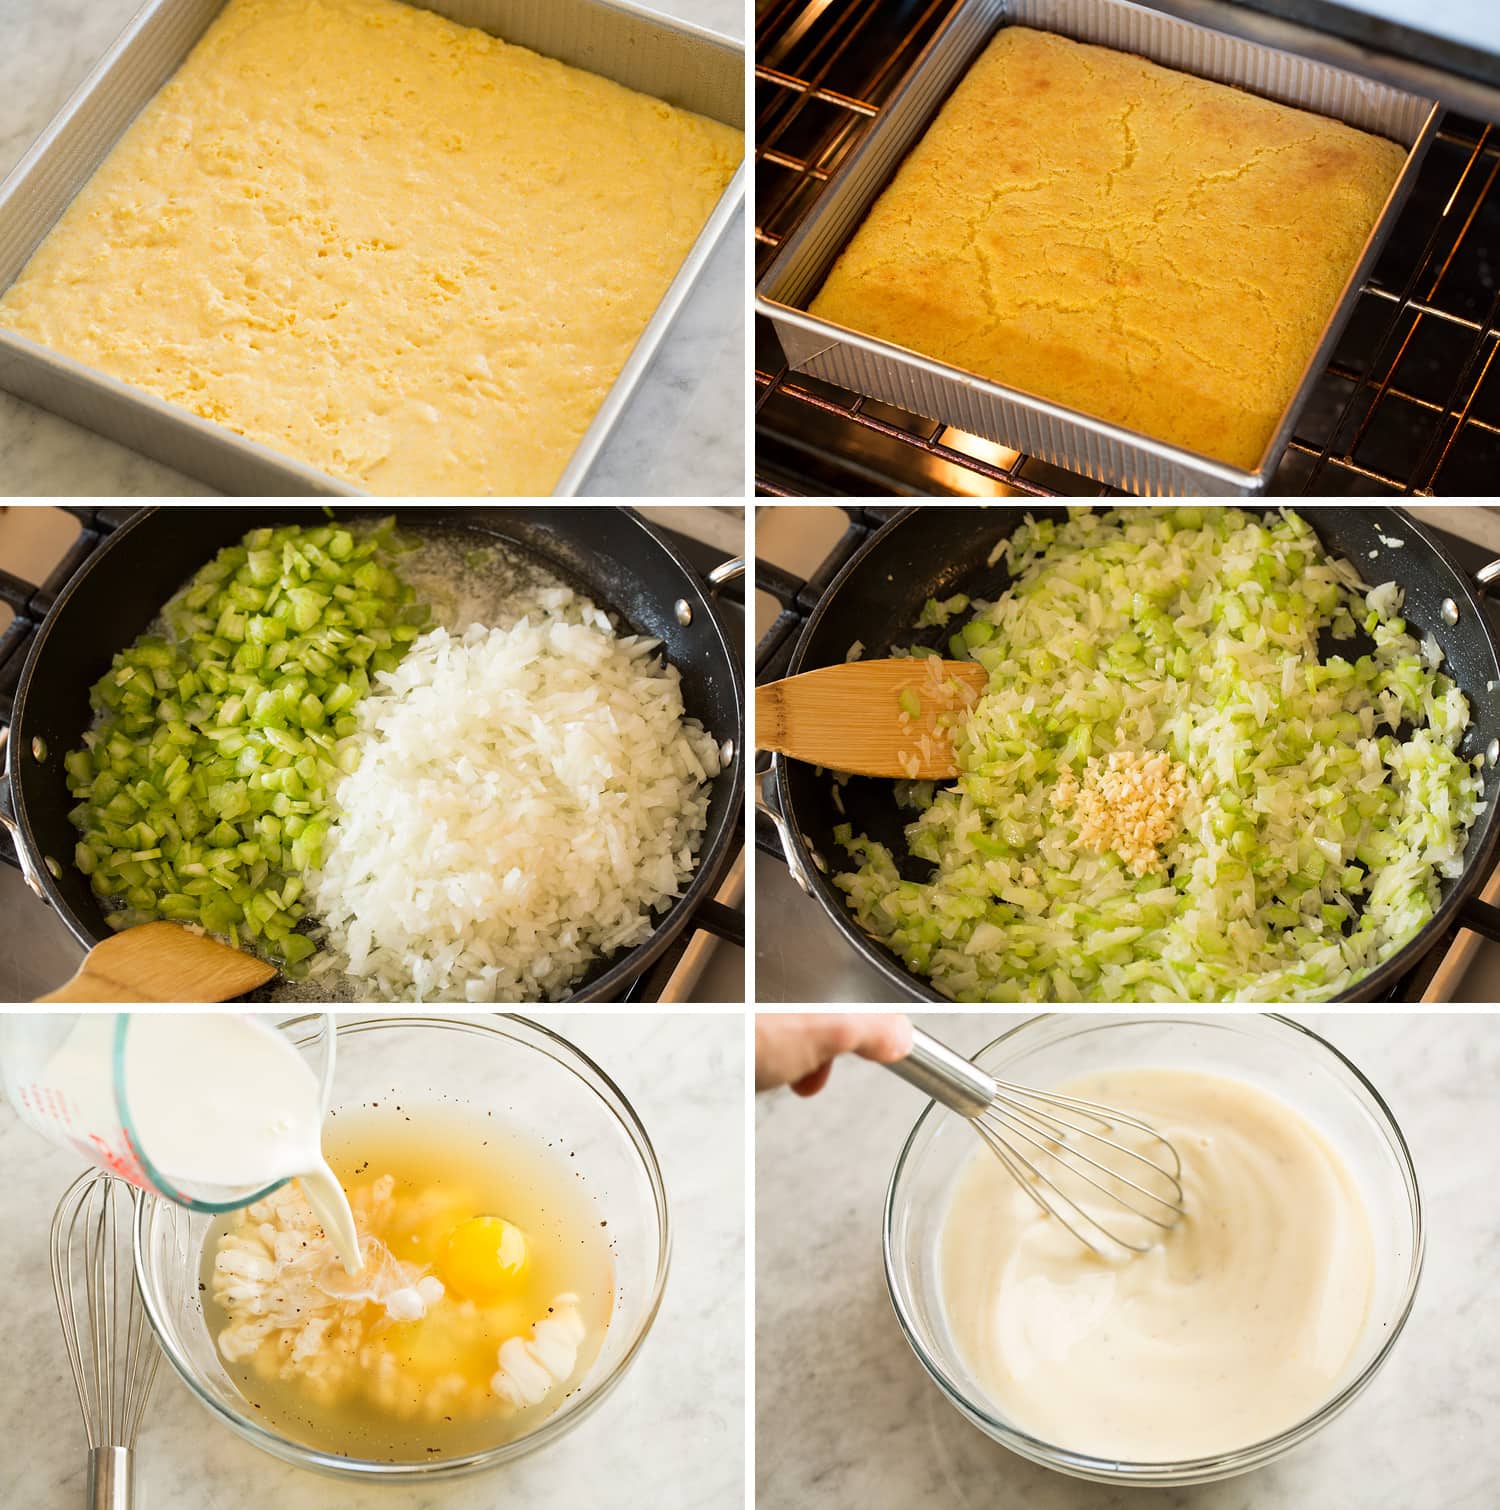 Sei foto che mostrano come preparare miscele di verdure e liquidi per il ripieno di pane di mais.